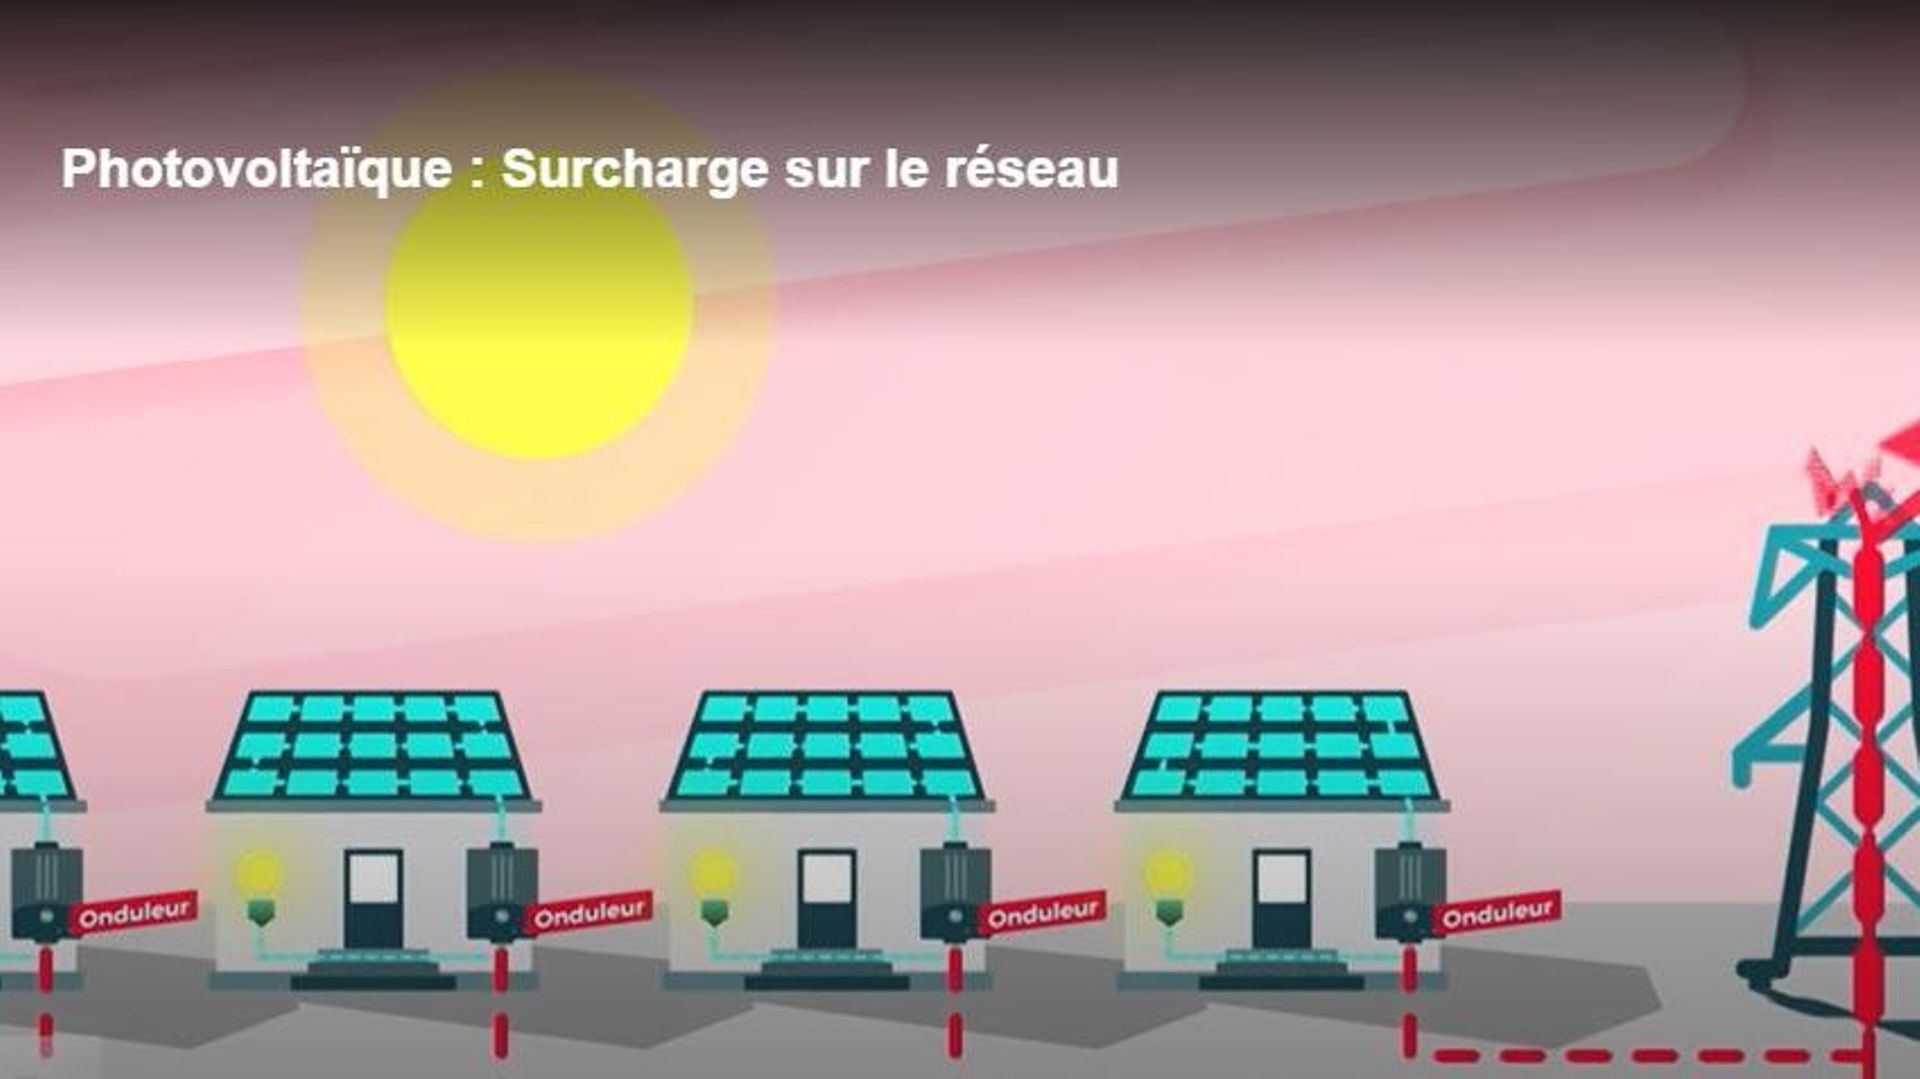 Photovoltaïque : Brabant wallon, Namur et Luxembourg les plus touchées par le décrochage des onduleurs